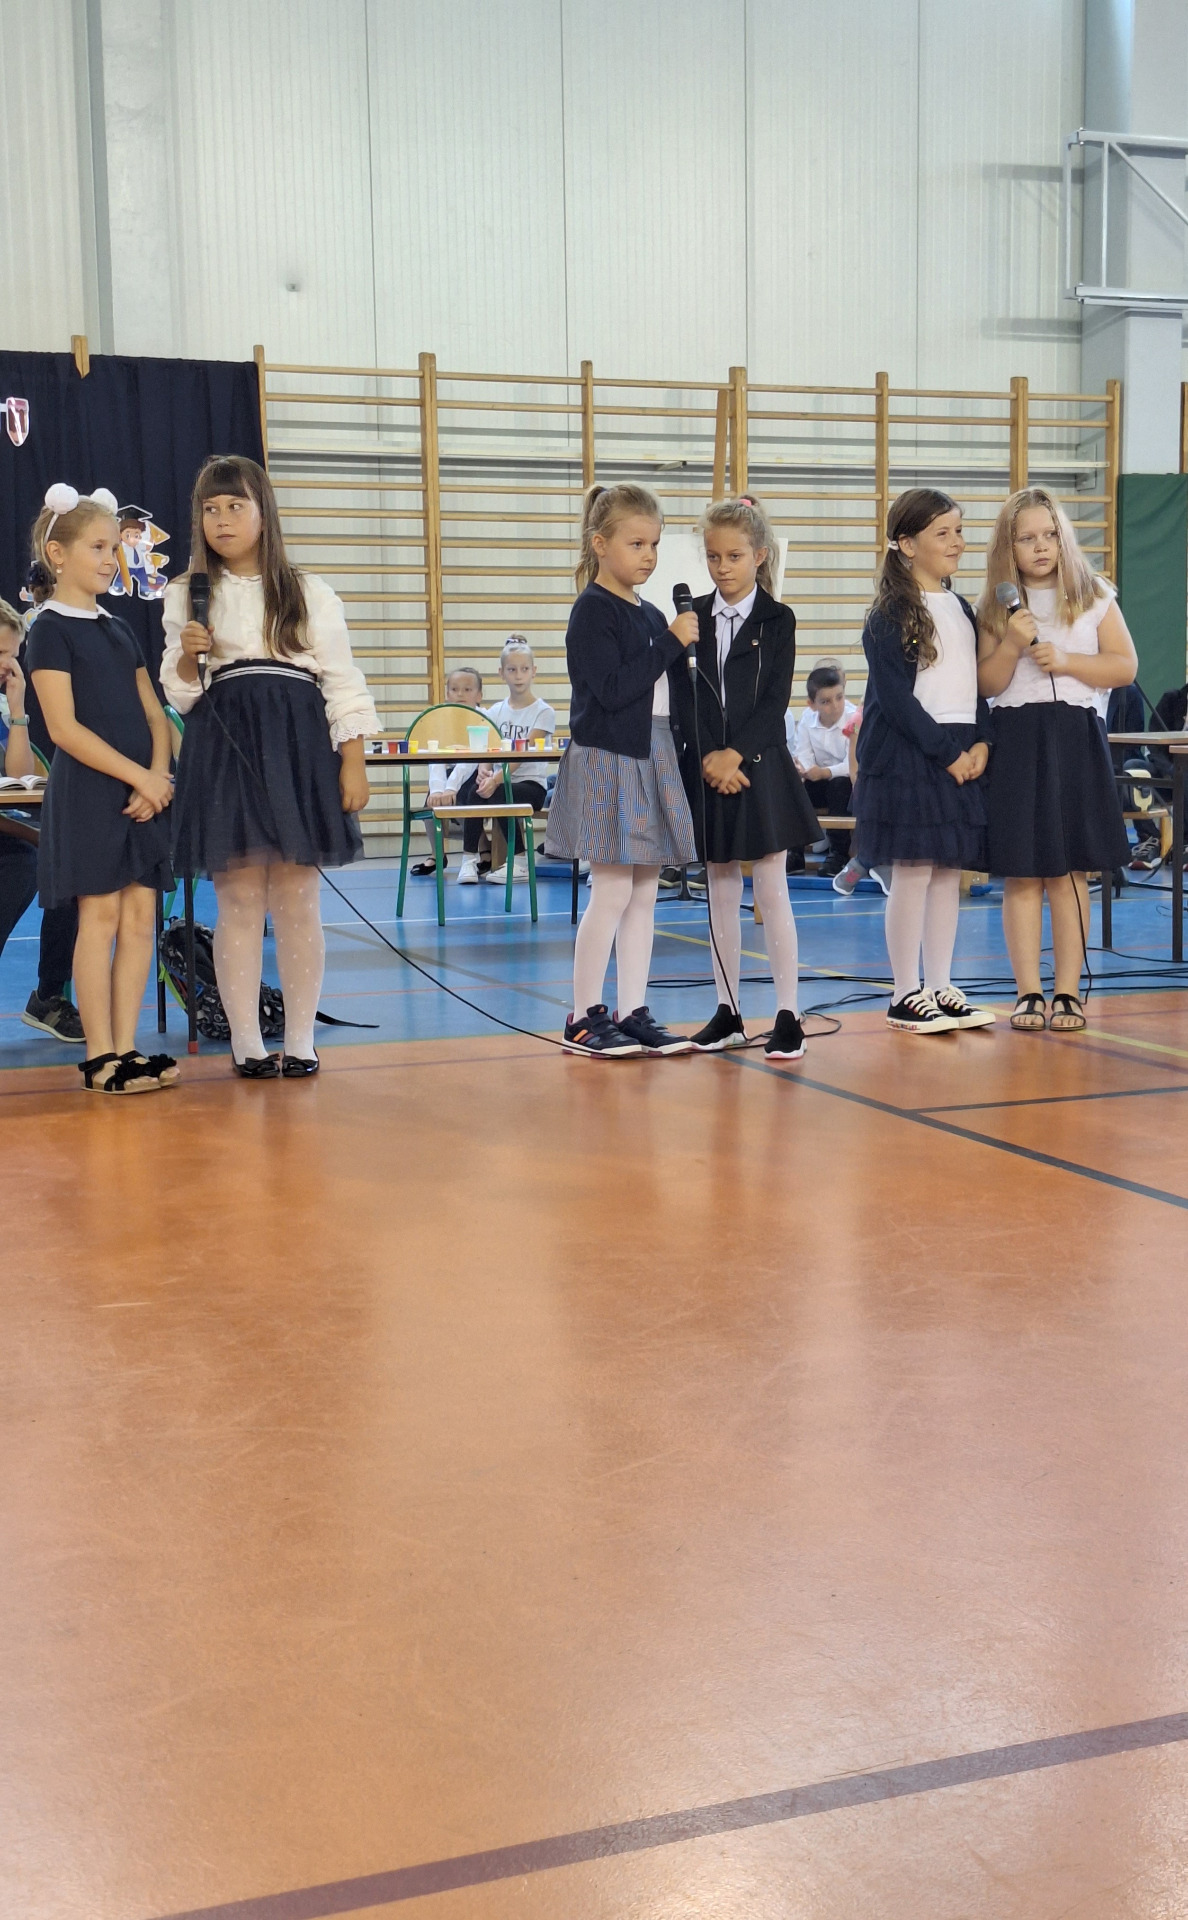 Grupa uczniów śpiewa piosenki na hali sportowej.